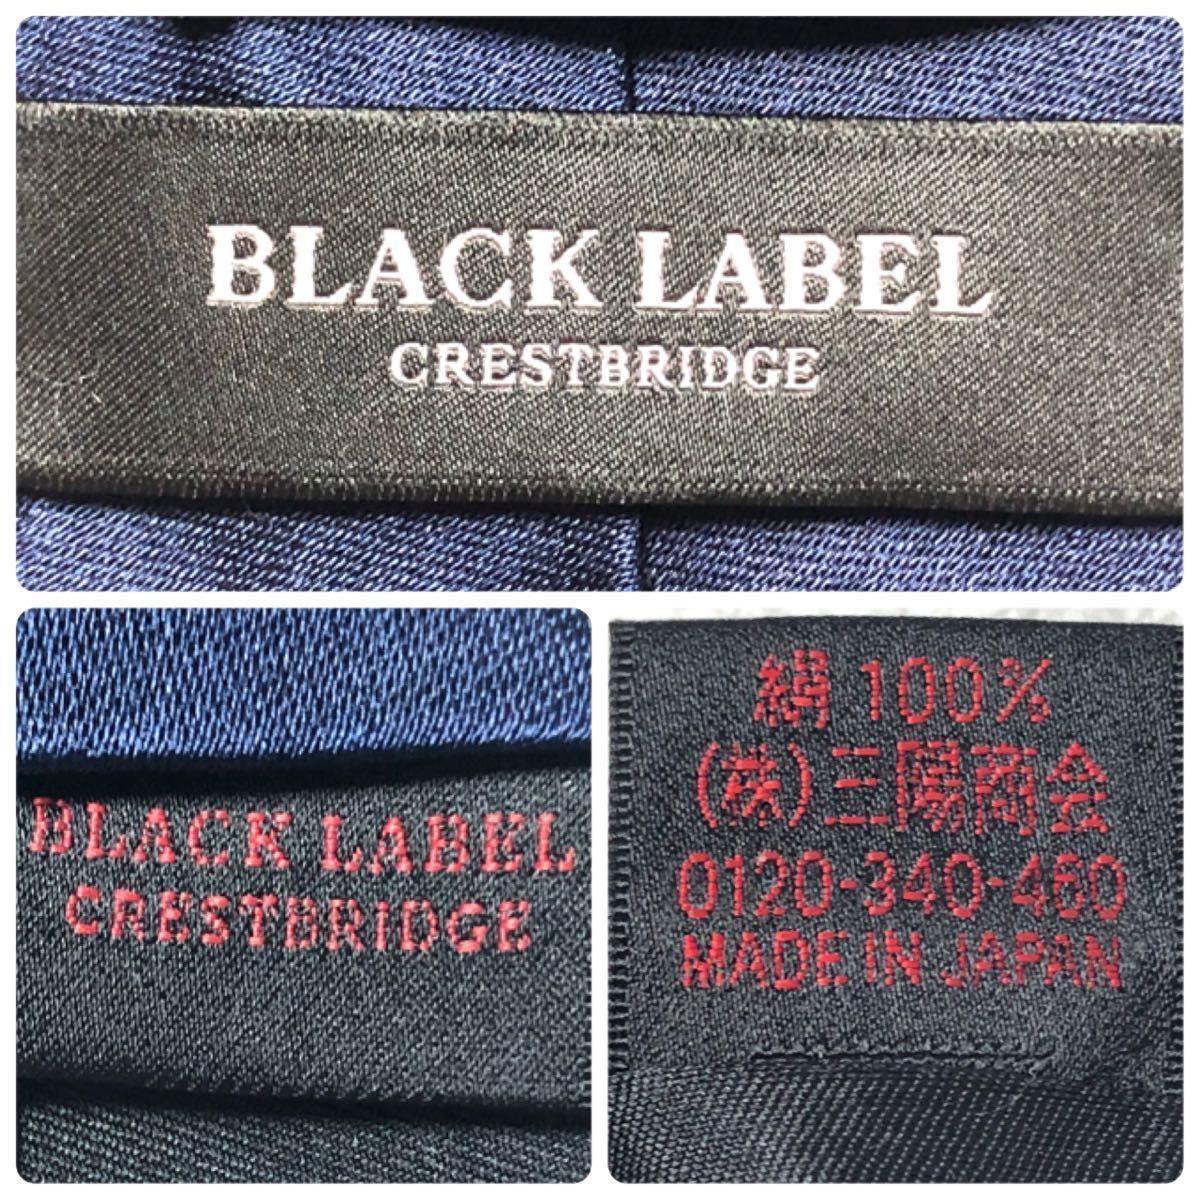 新品未使用タグ付き BLACK LABEL CRESTBRIDGE ブラックレーベル